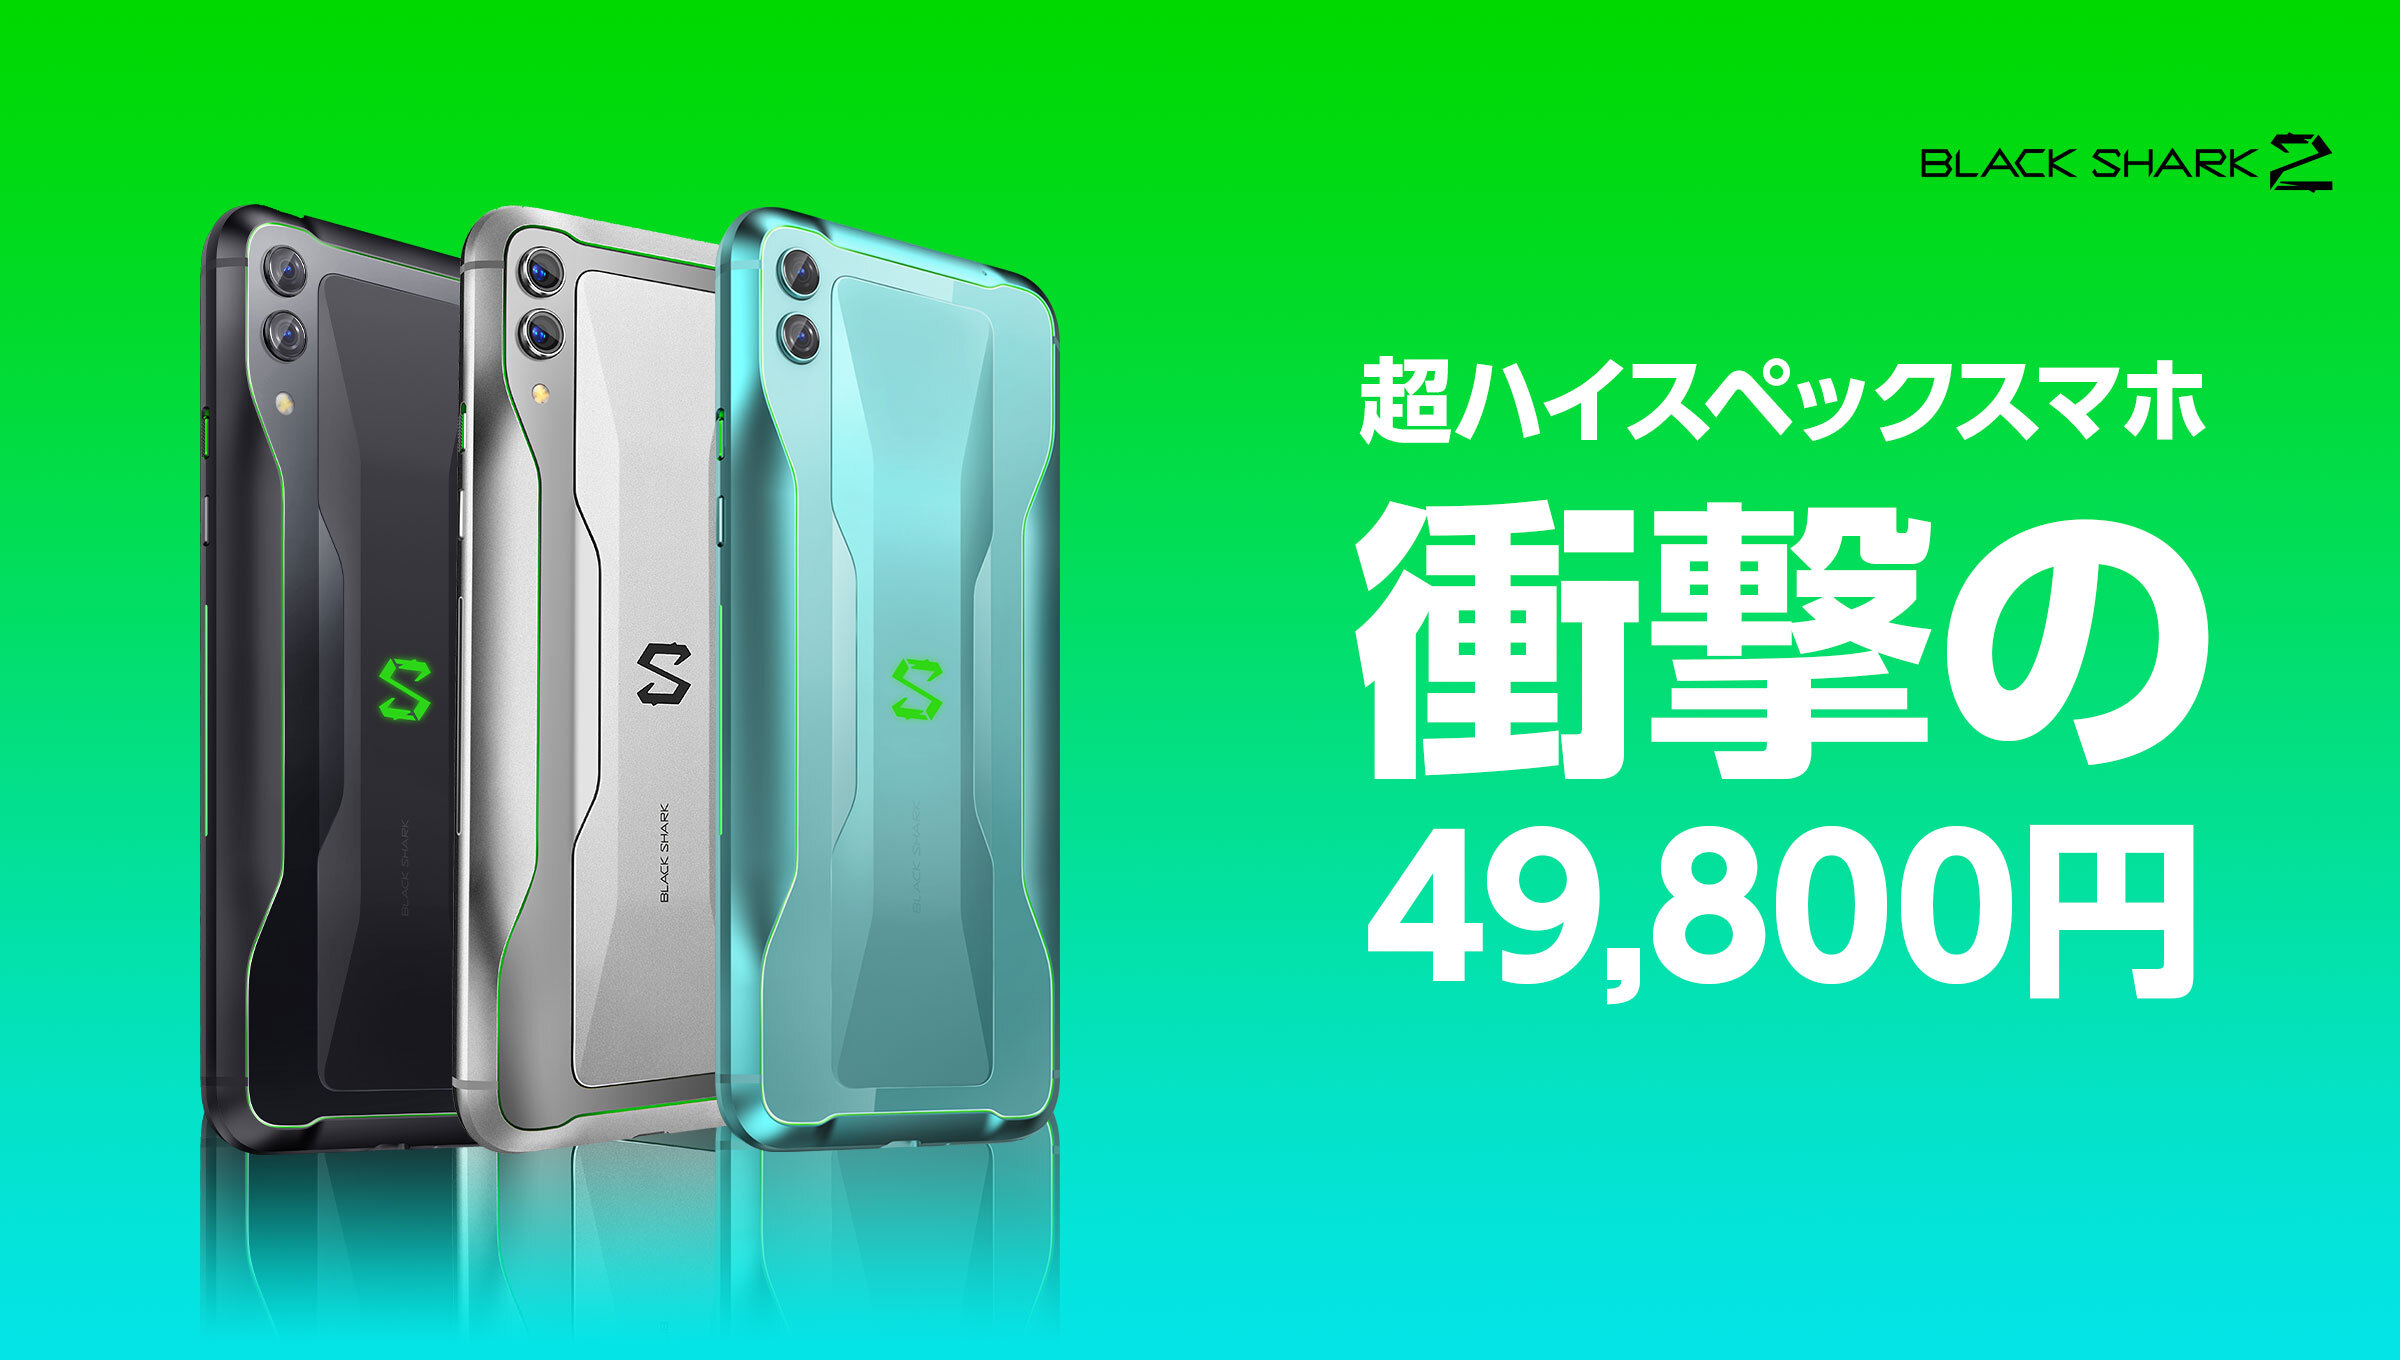 Snapdragon 855、6GB+128GB搭載の「Black Shark2 JAPANモデル」が衝撃 ...